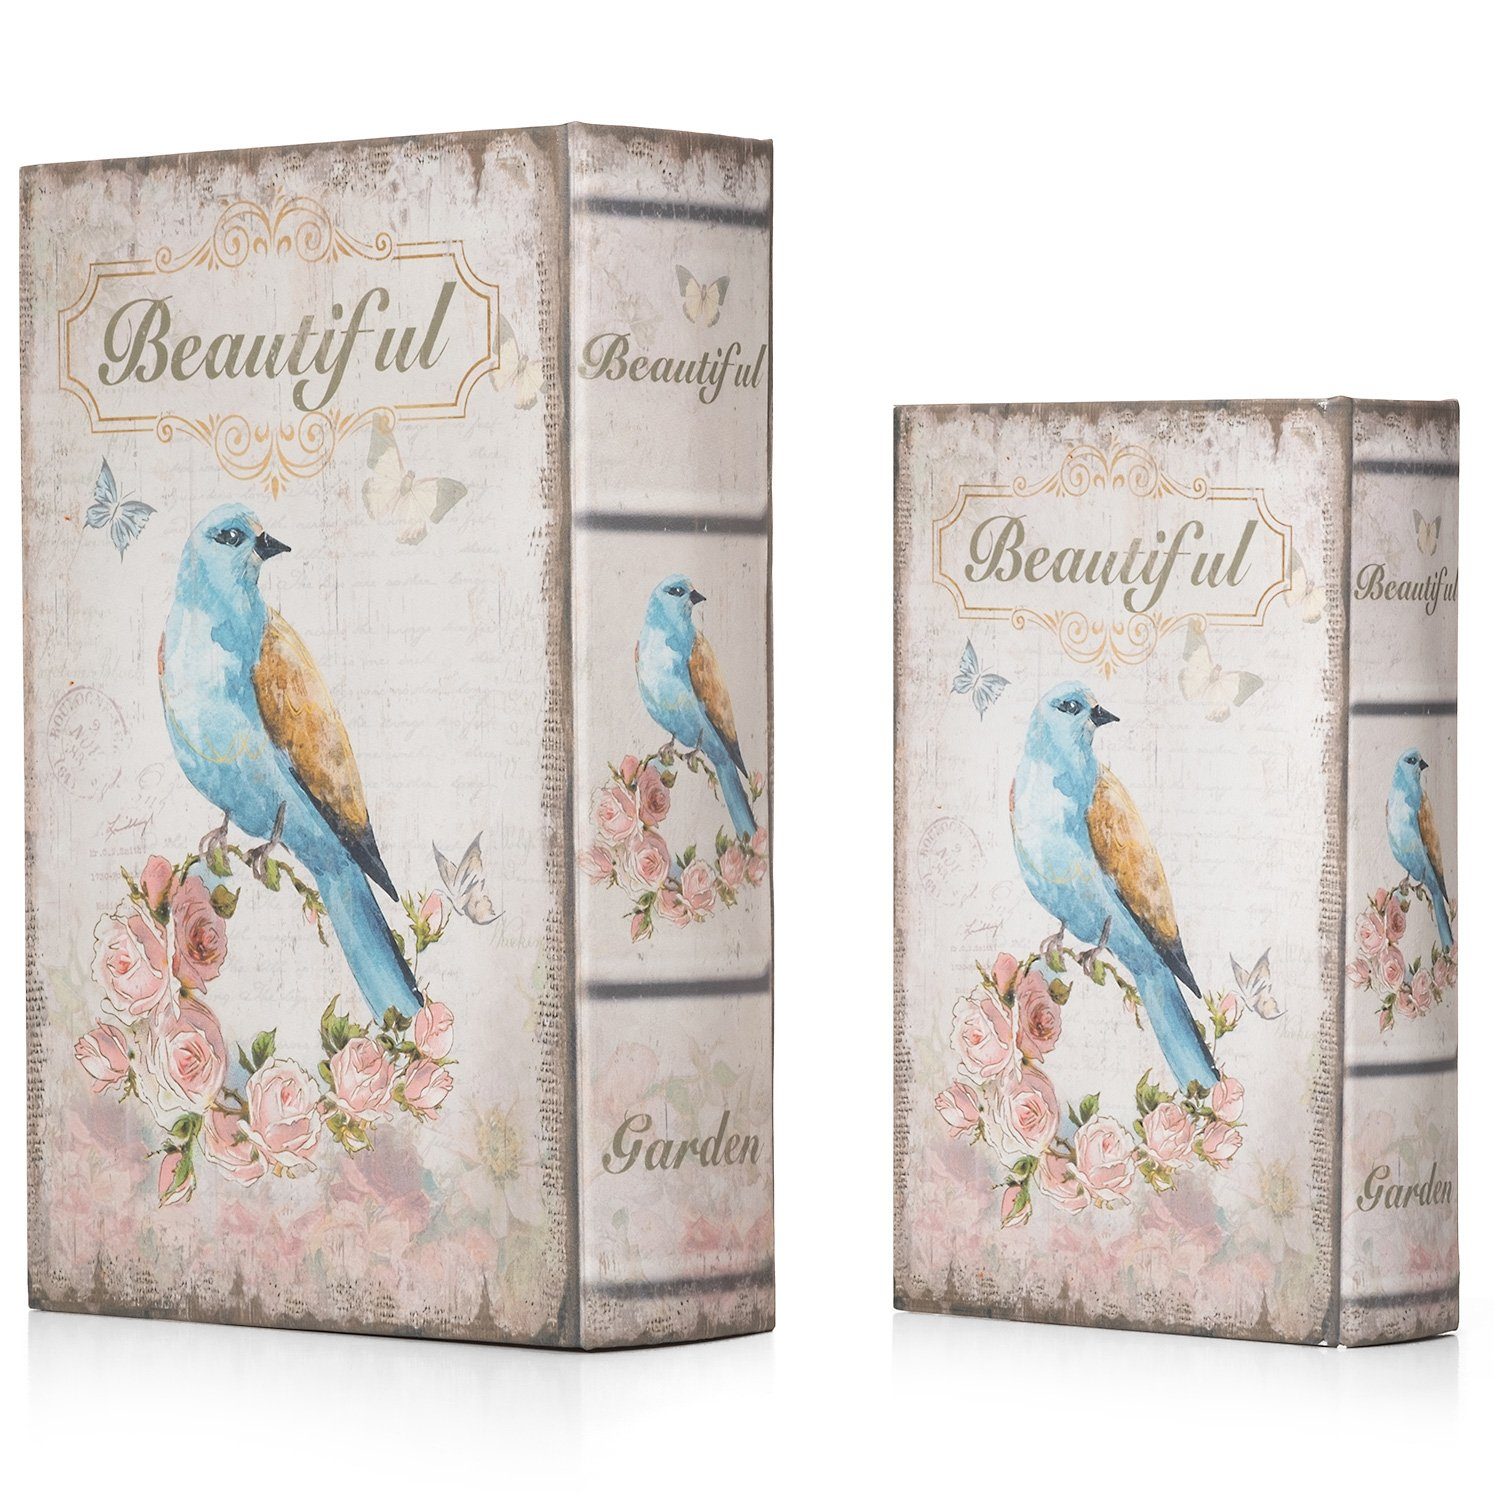 Moritz Buchhülle Box Geldversteck Buch Schatulle Buchattrappe Beautiful Etui Buchtresor irrelevant, Vögelchen Safe Bird Vogel